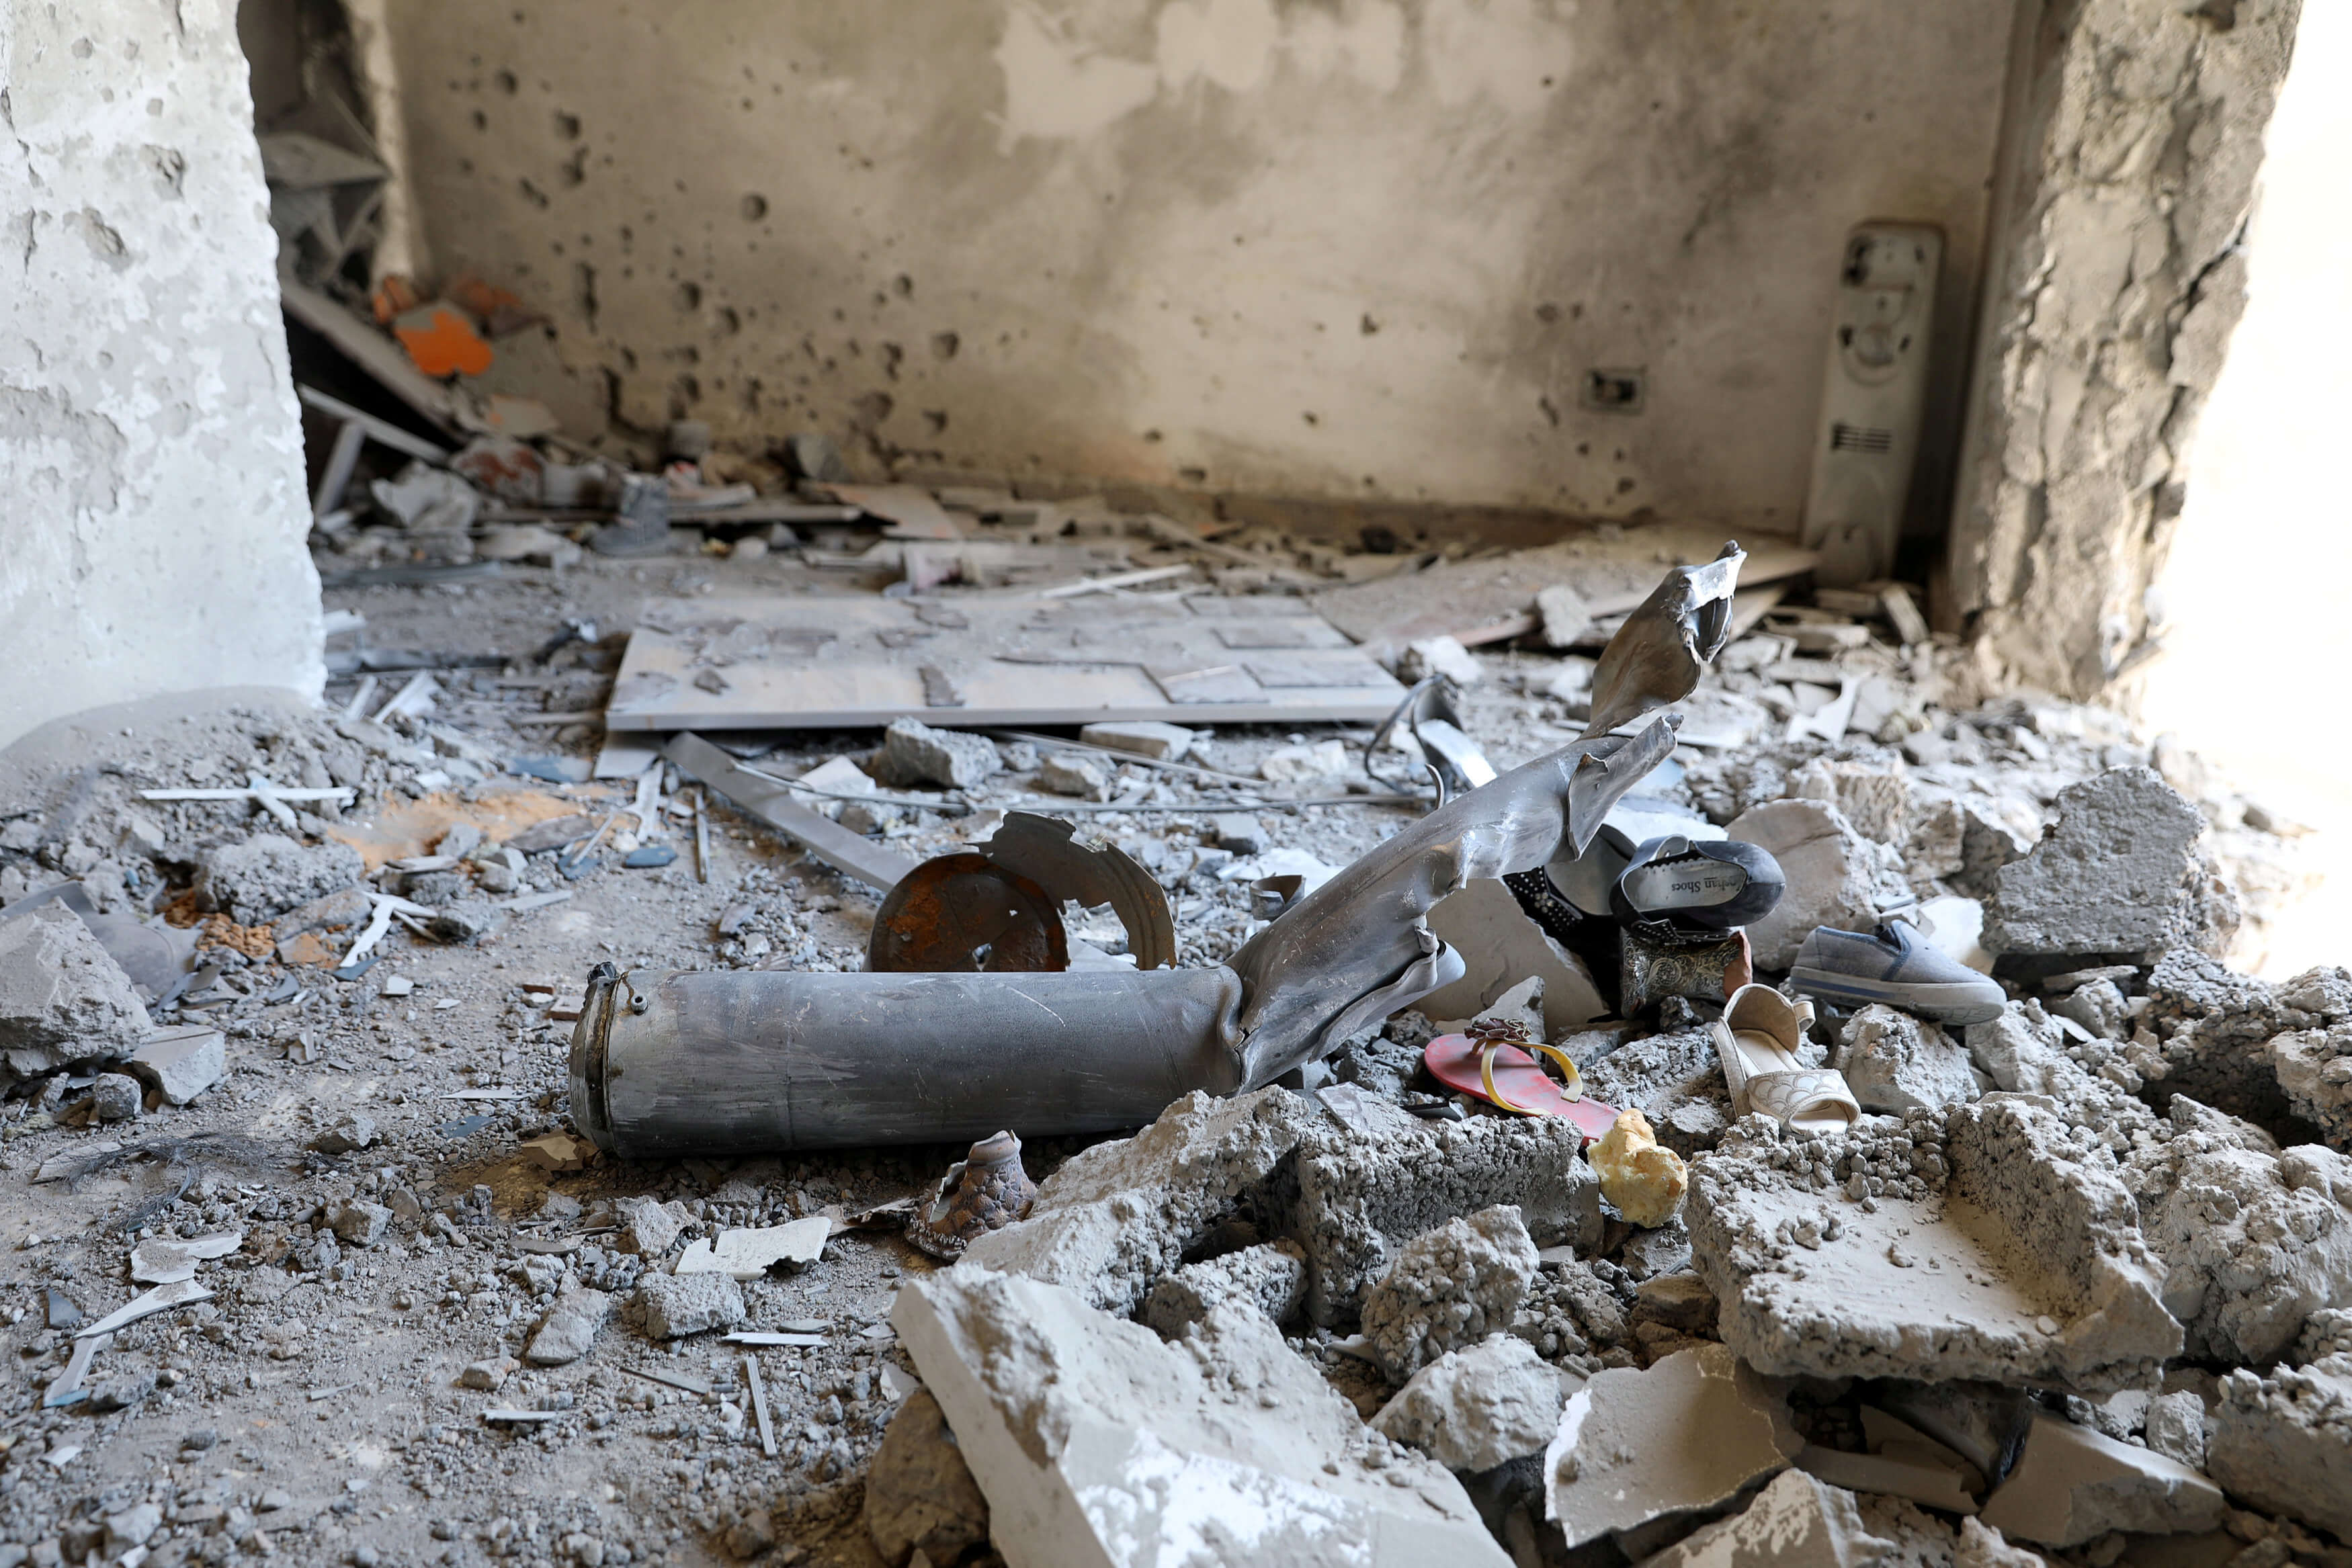 Λιβύη: Τρία παιδιά σκοτώθηκαν από ρουκέτα που έπεσε κοντά σε σχολείο